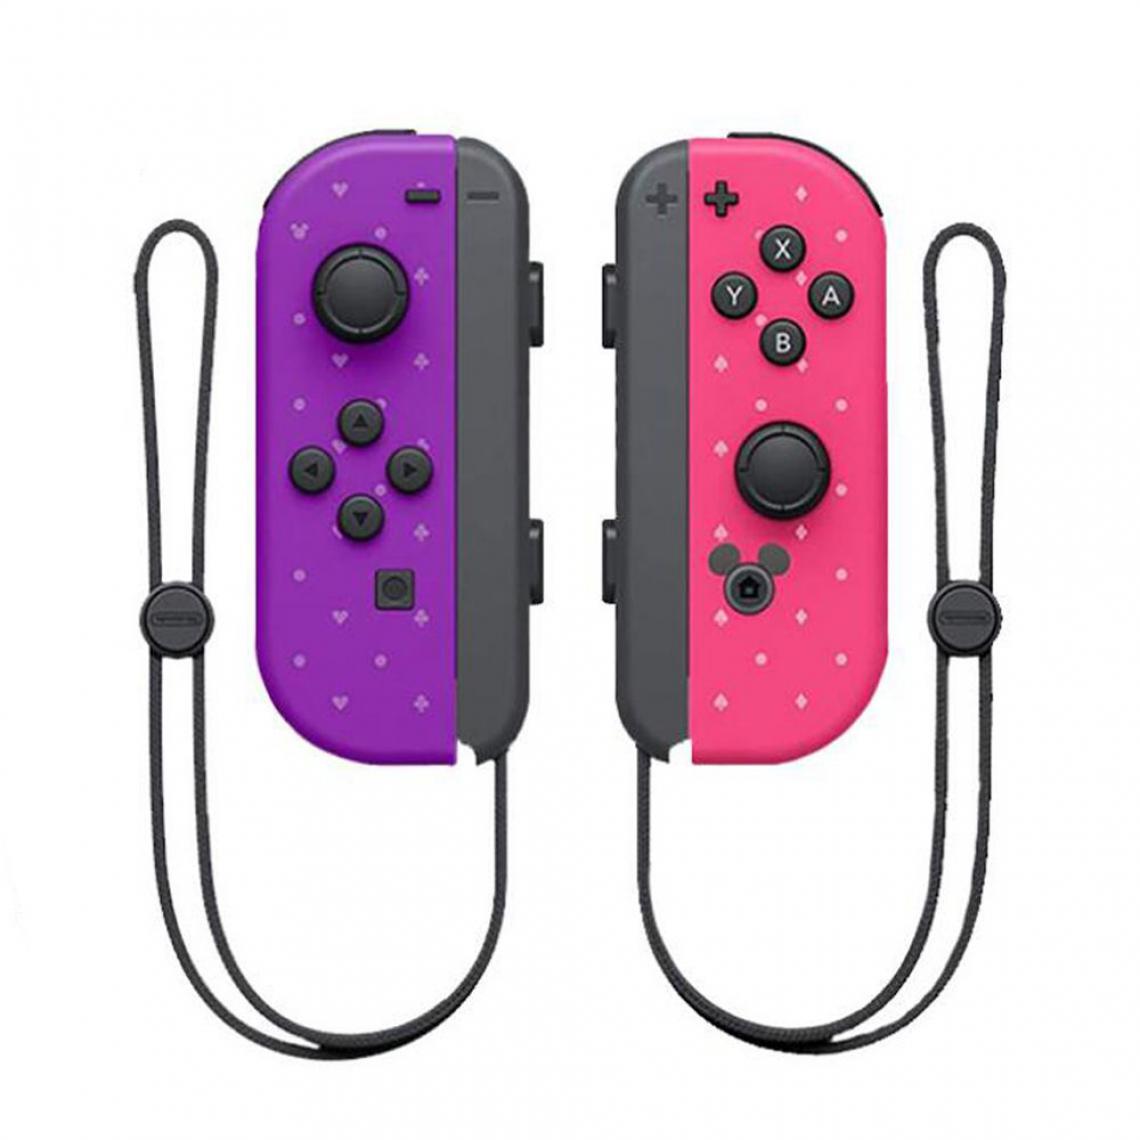 Generic - Manette de jeu Joy-Con sans fil, Joystickï¼ gauche/droite pour nintendo Switch  -   Violet / Rose  - Joystick